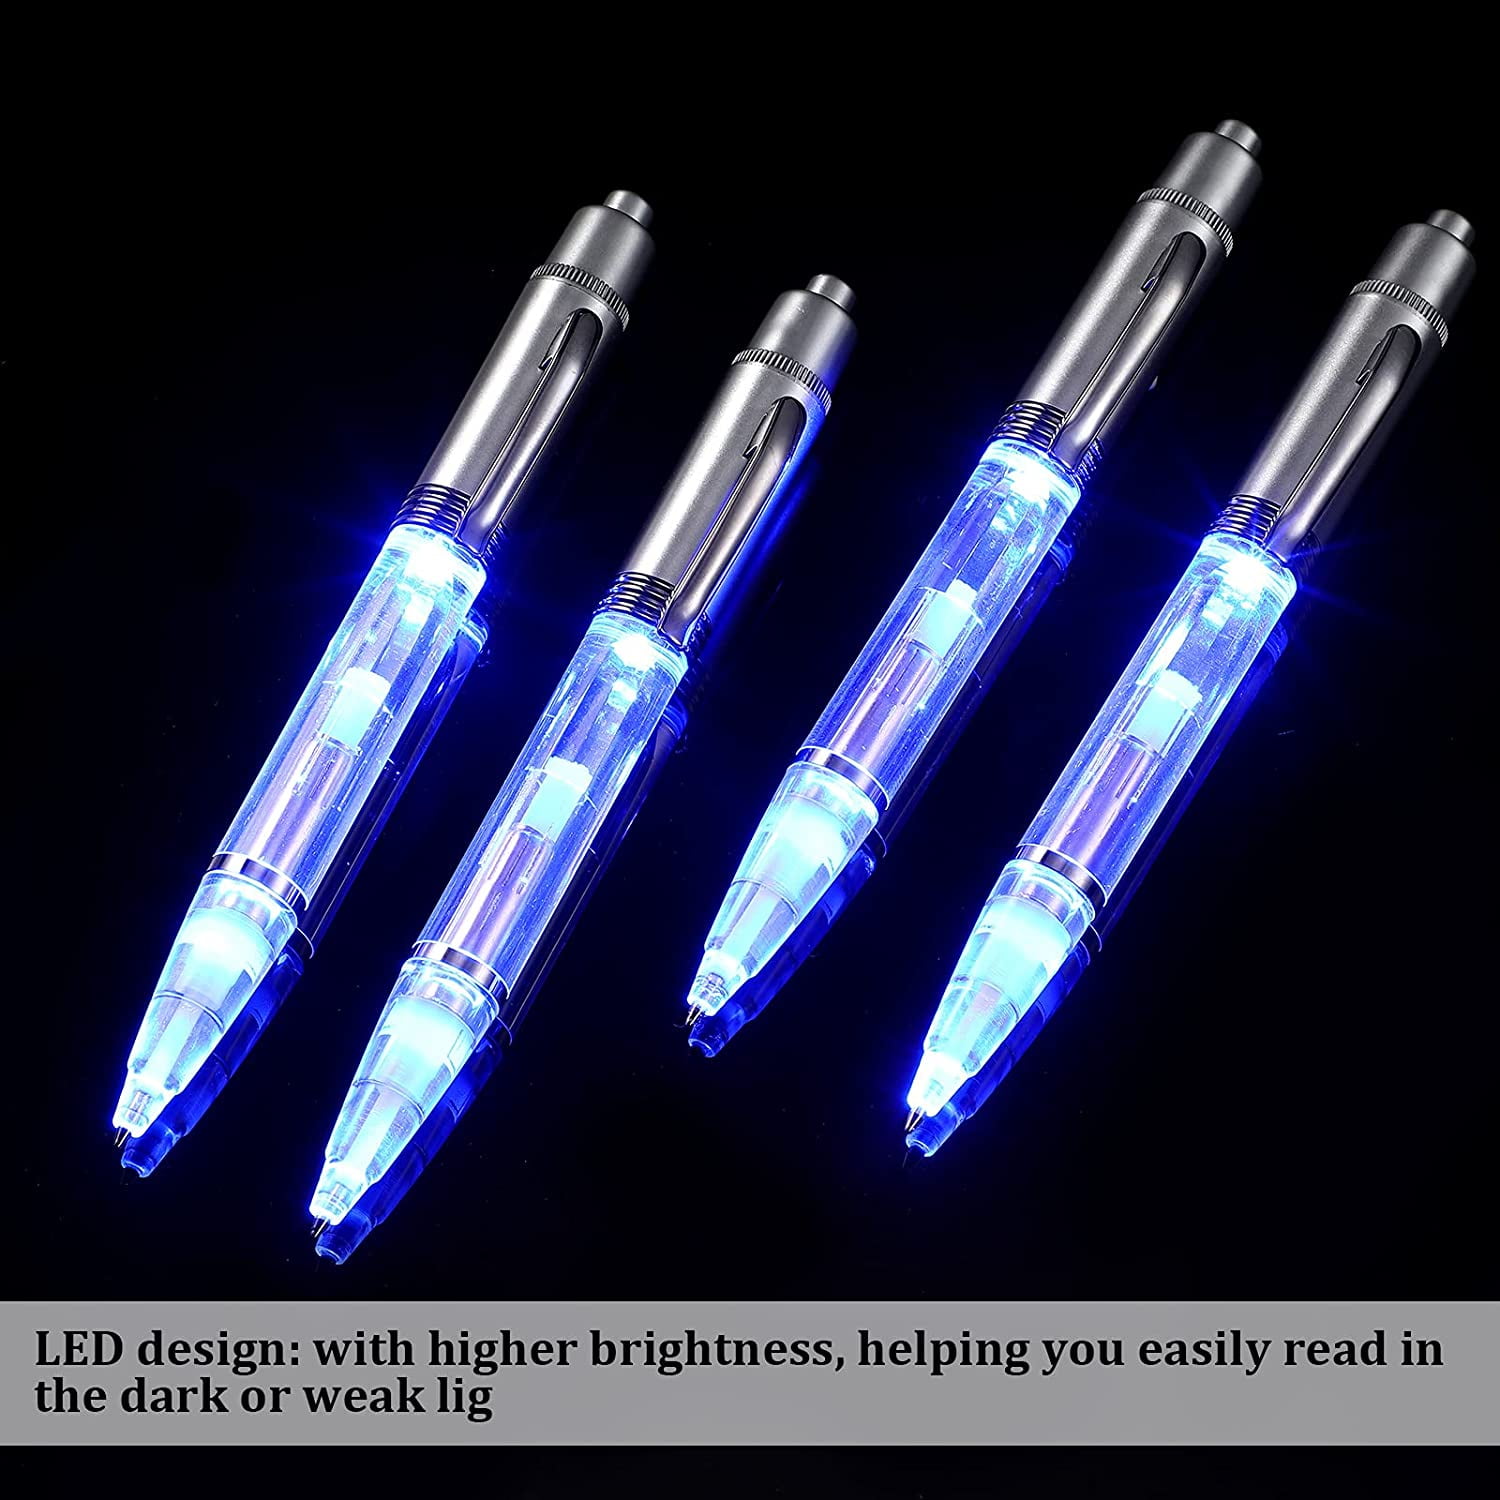 Lighted Tip Pen LED Penlight Light Up Ballpoint Writing inDark 4 Pack-White 